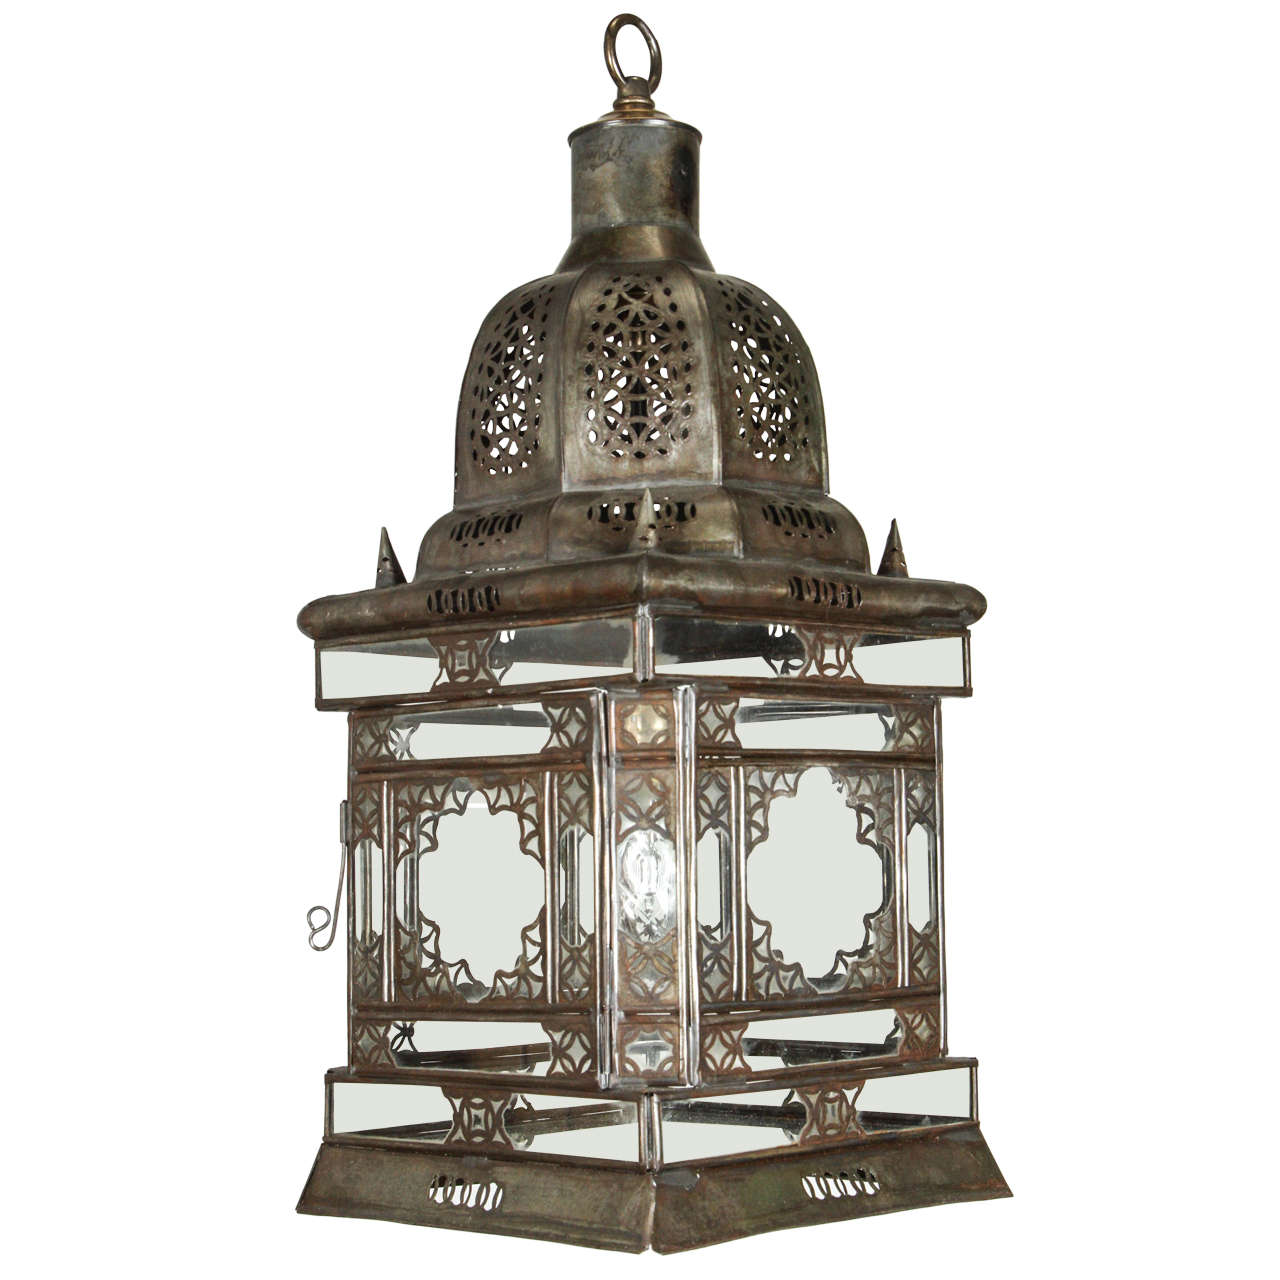 Moroccan Hanging Glass Lantern